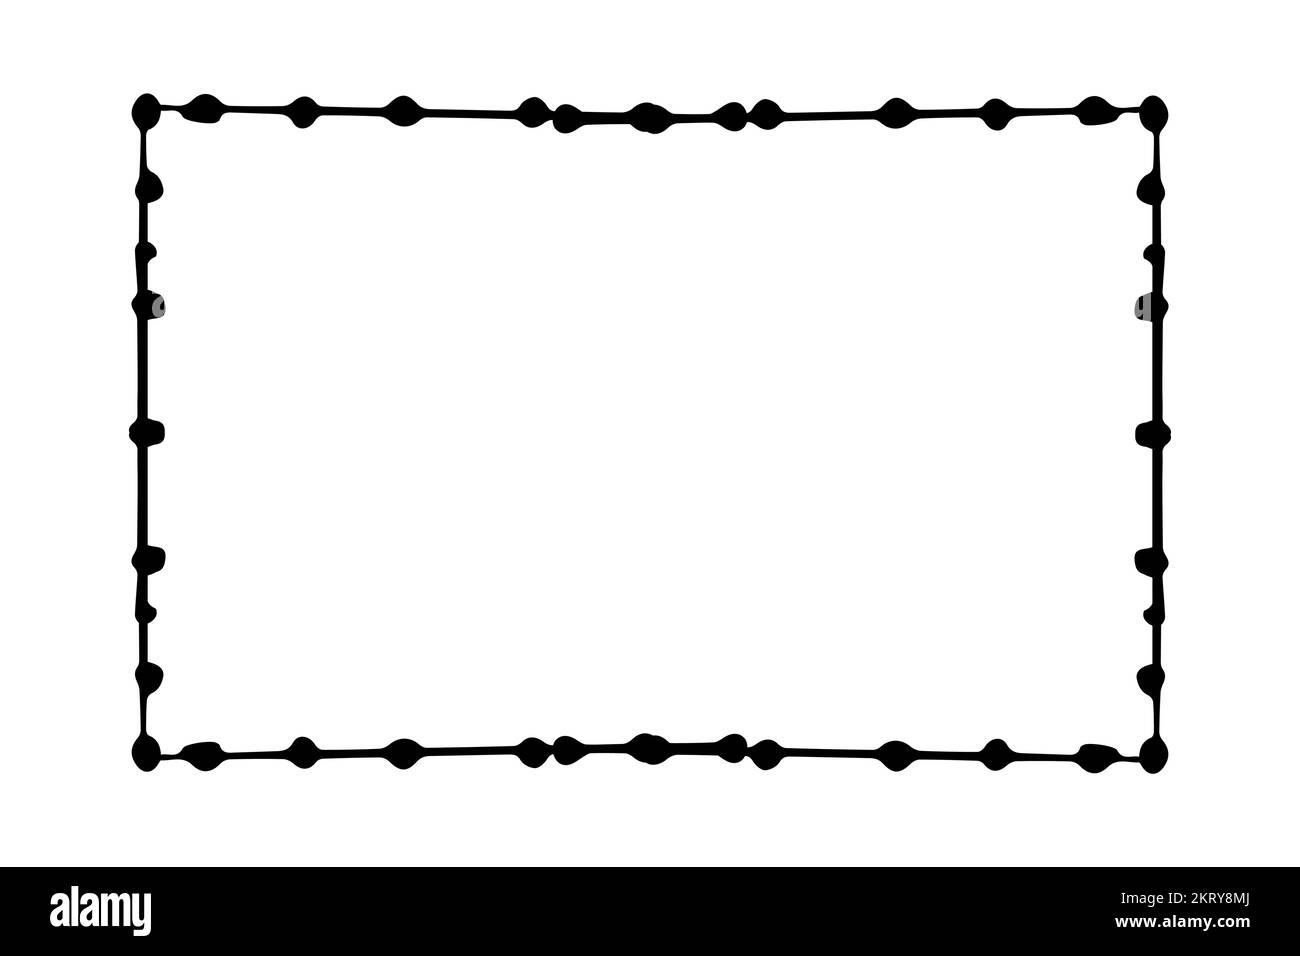 Elegante cornice con puntini, silhouette bordata in stile doodle disegnata a mano isolata su sfondo bianco. Decorazione, delicata clip art.. Illustrazione vettoriale Illustrazione Vettoriale